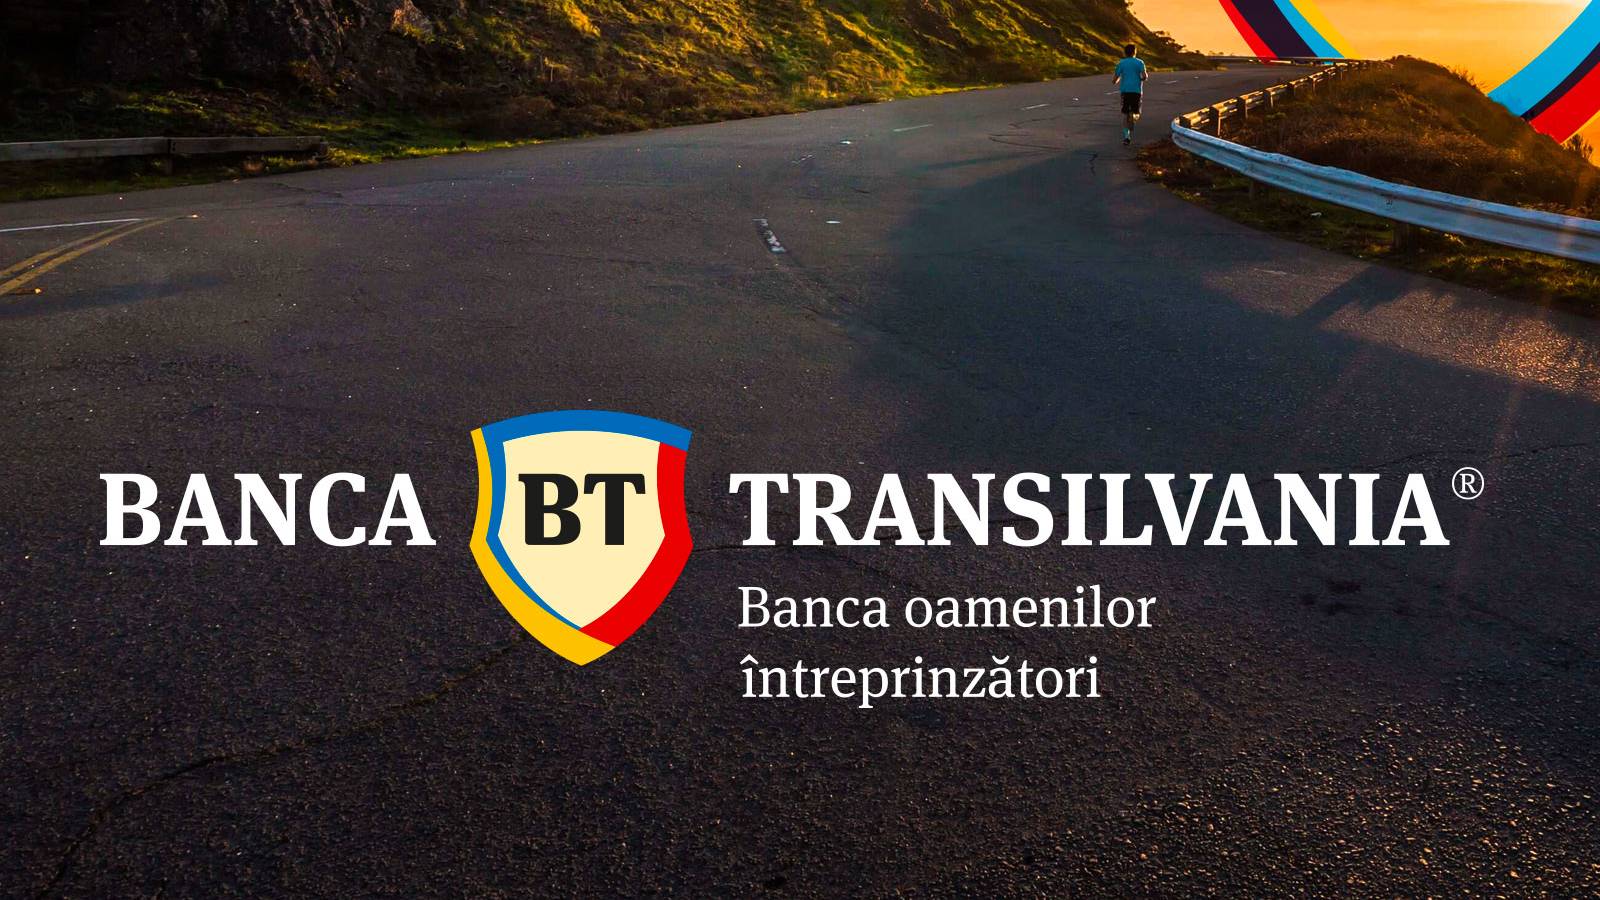 BANCA Transilvania snelkoppeling